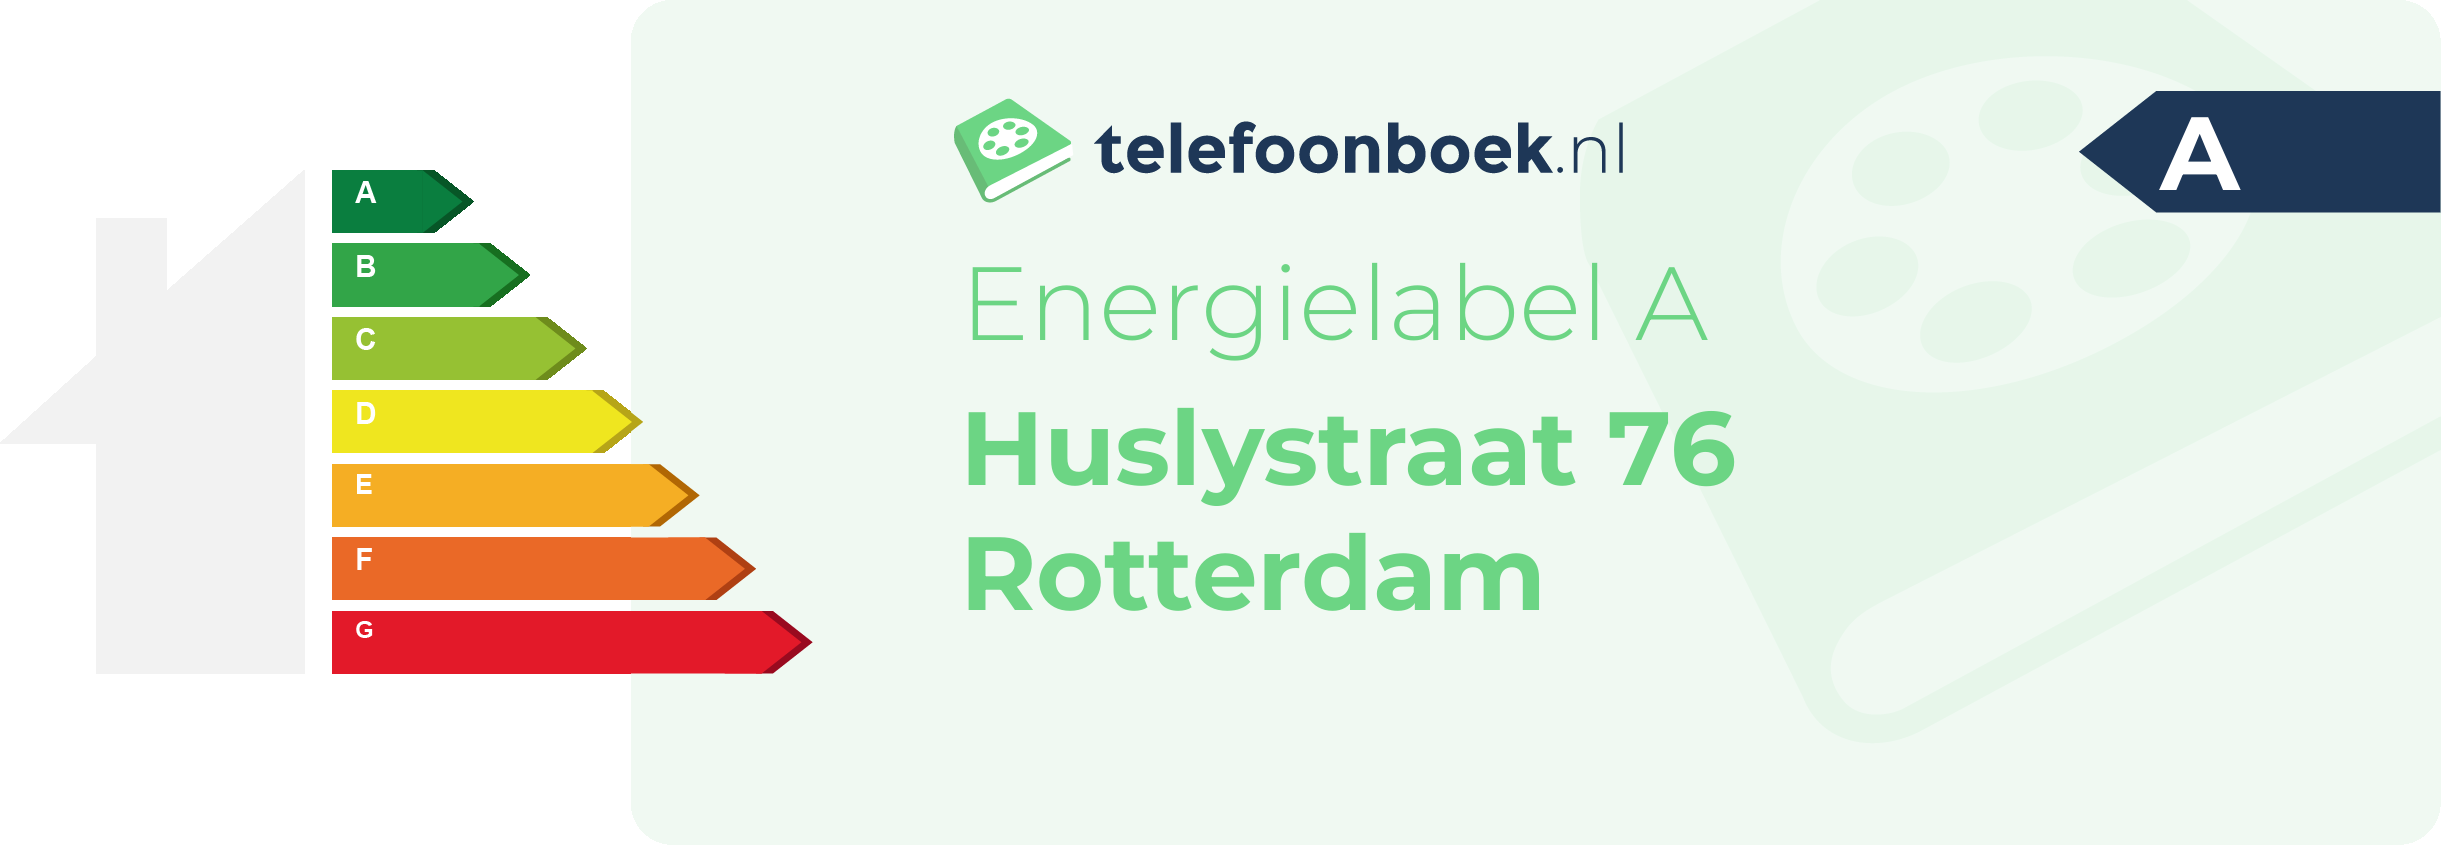 Energielabel Huslystraat 76 Rotterdam